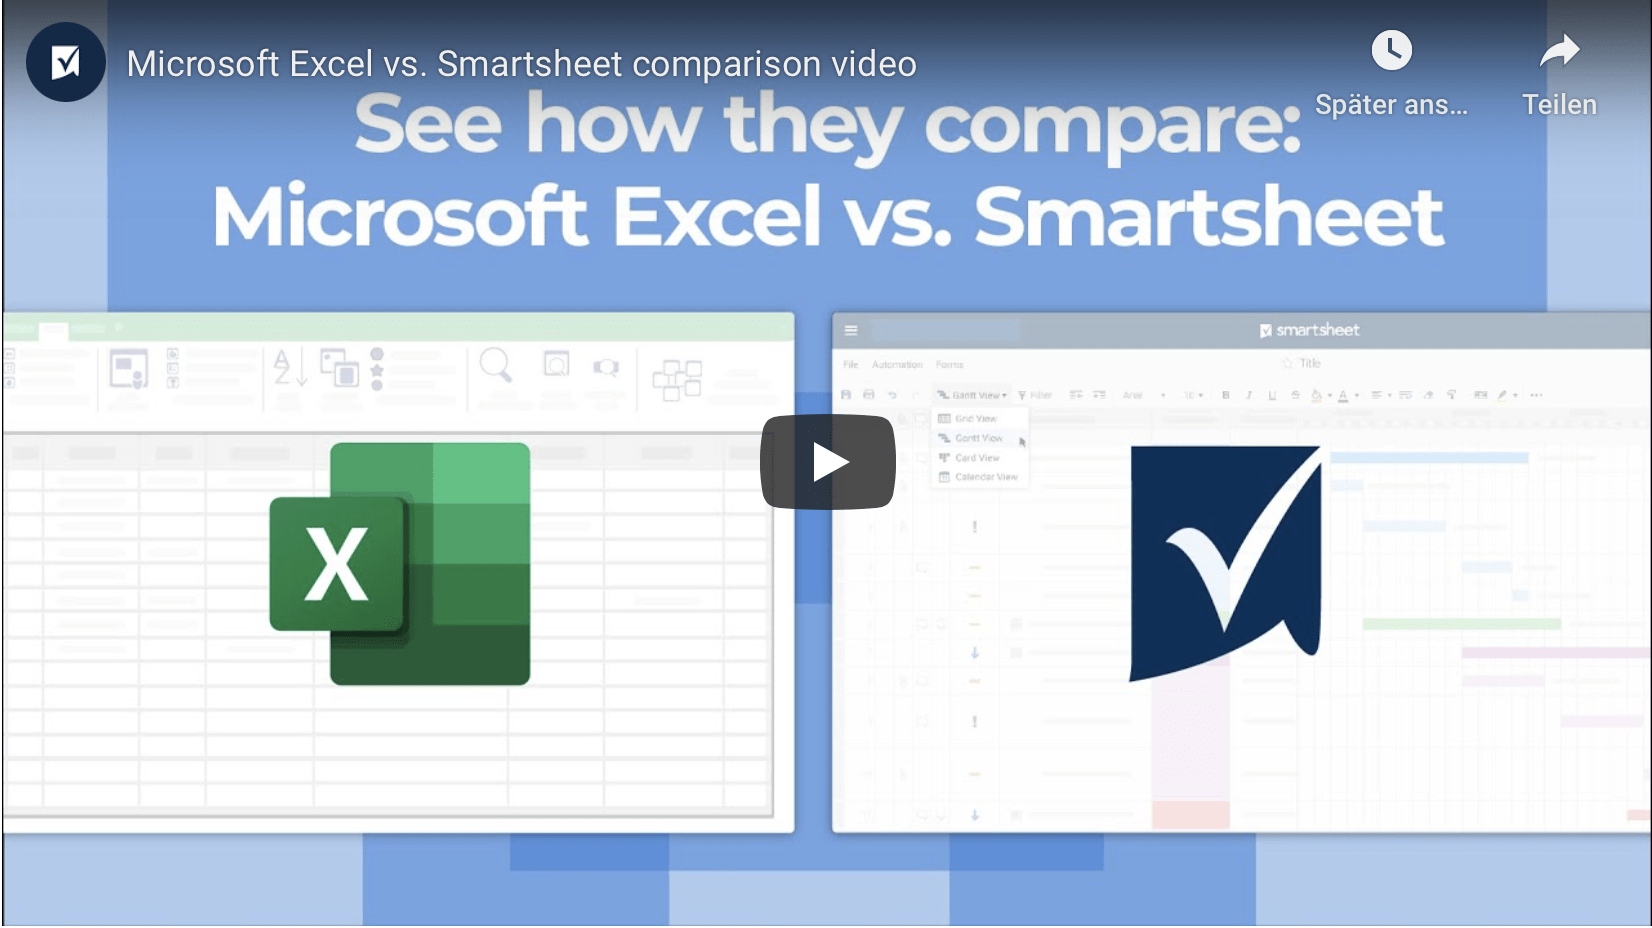 MS Excel vs Smartsheet